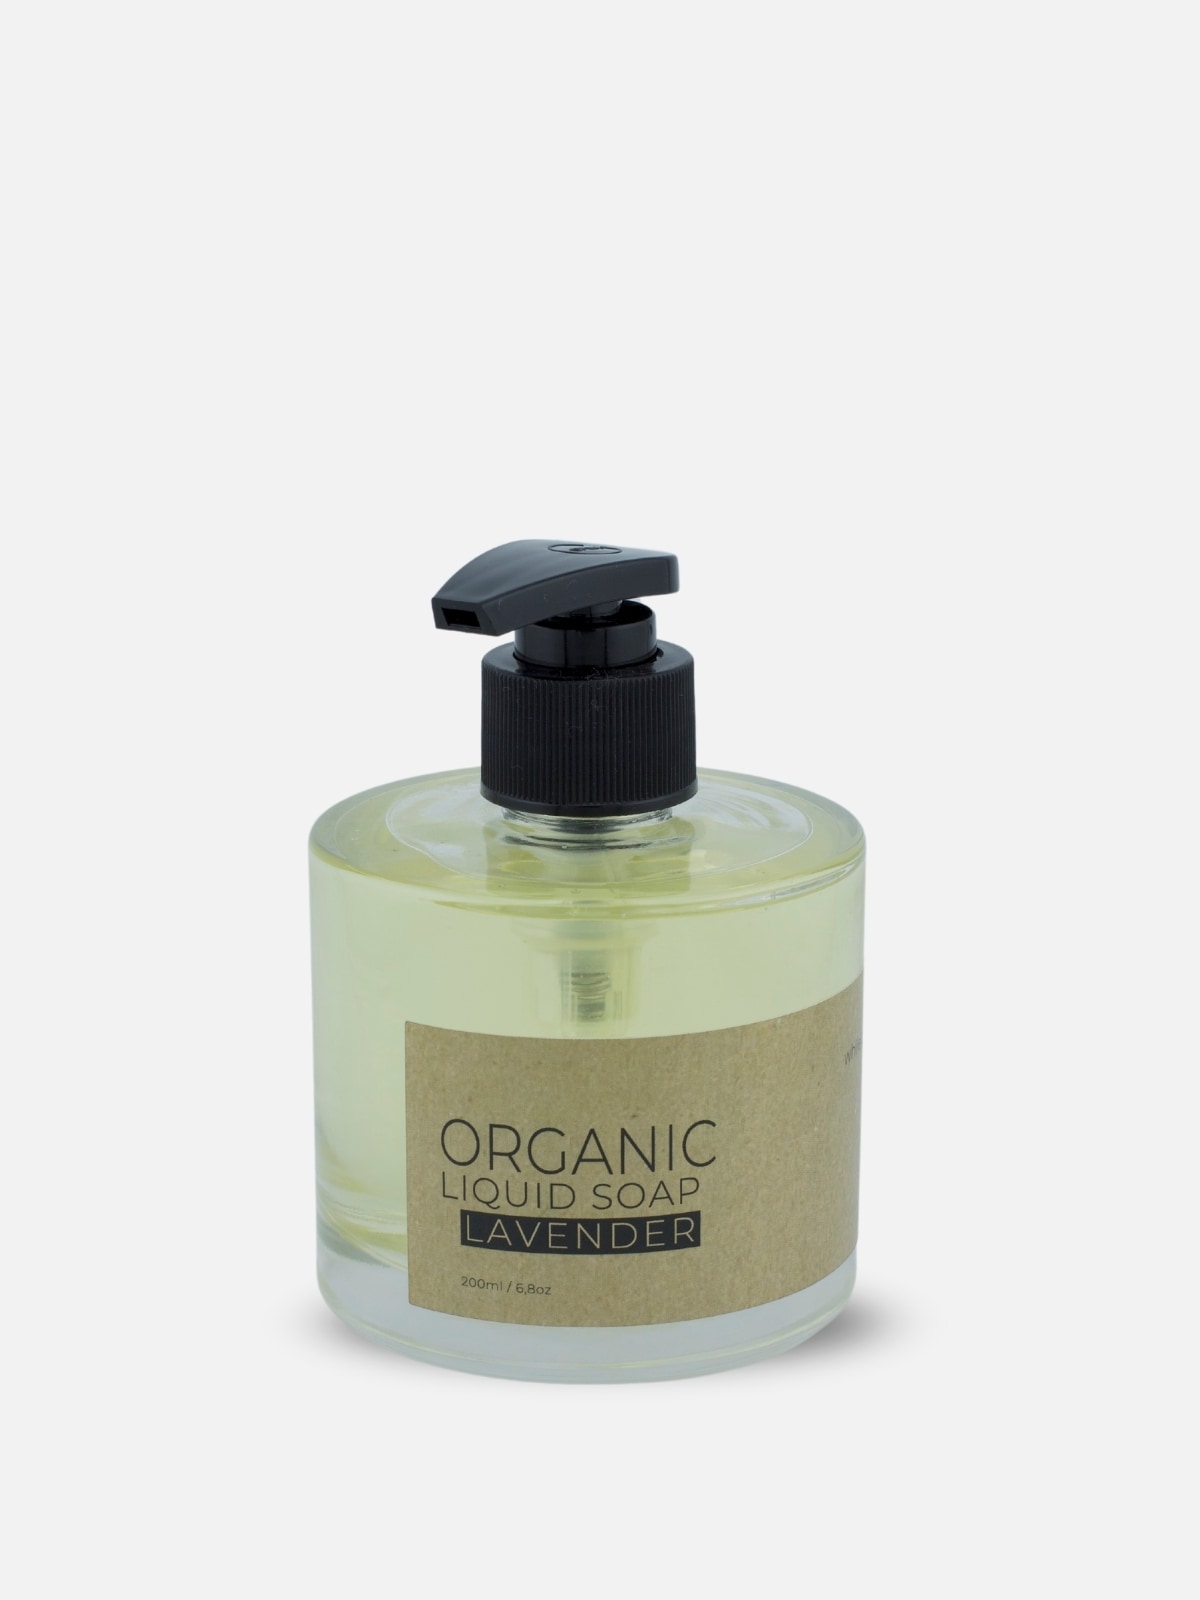 The Munio - Sapone Liquido alla Lavanda - Lavander organic liquid soap